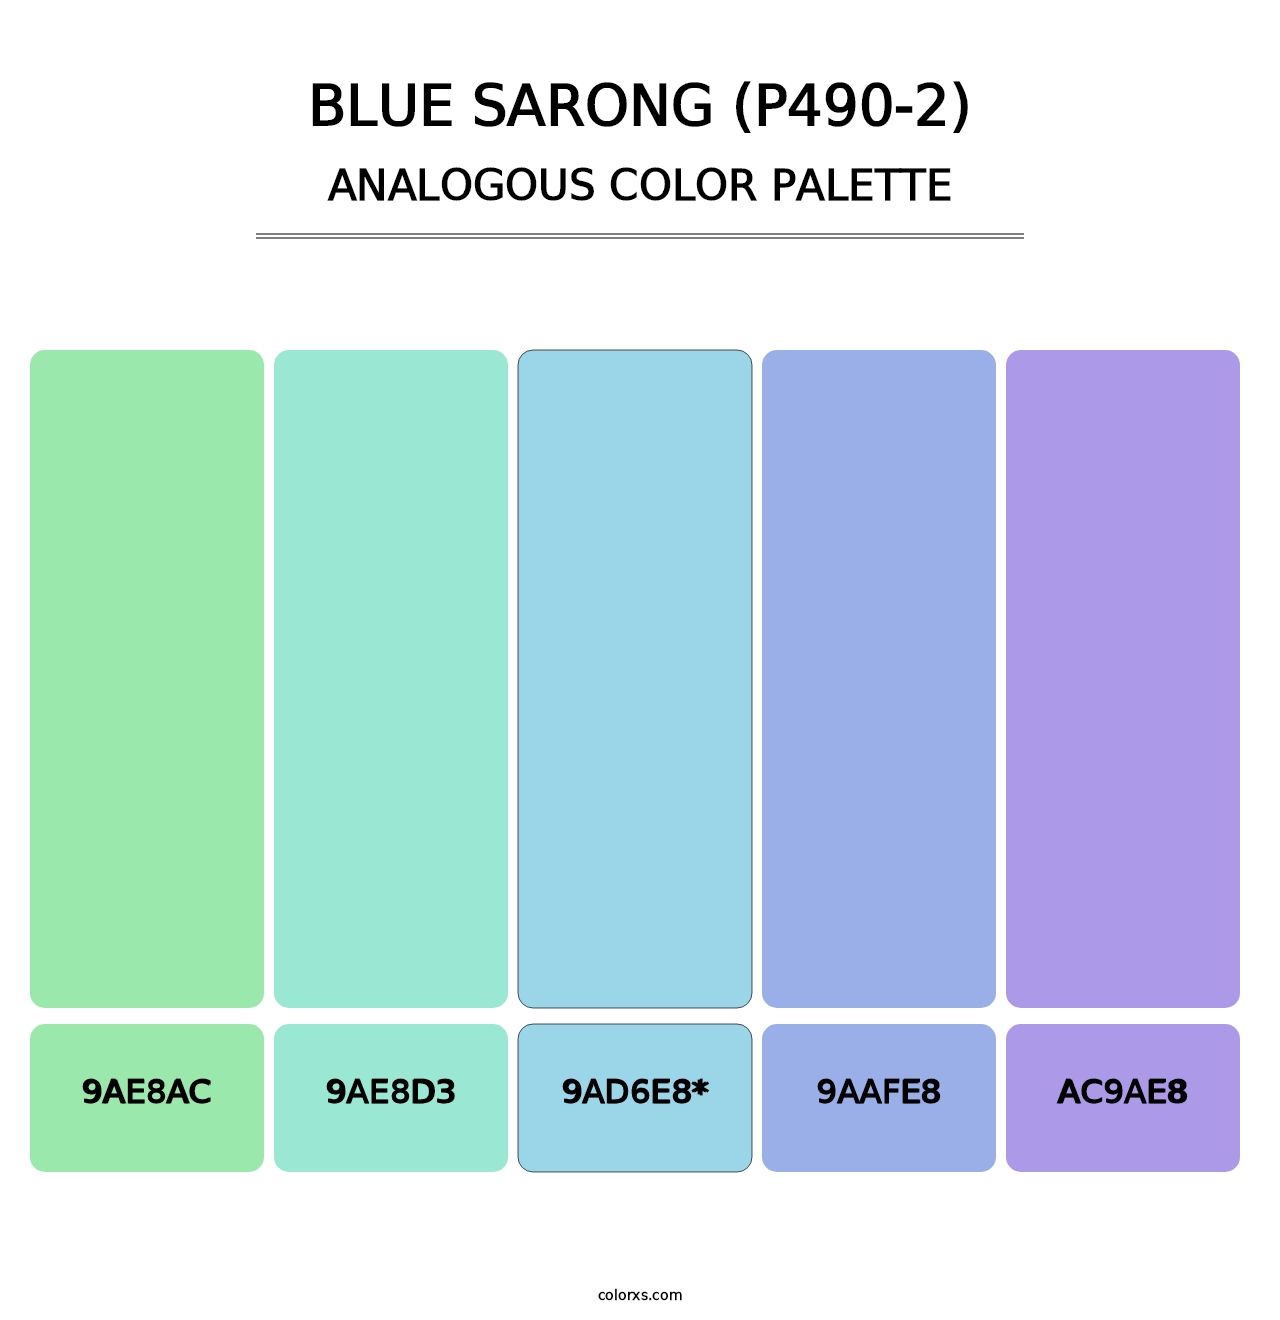 Blue Sarong (P490-2) - Analogous Color Palette